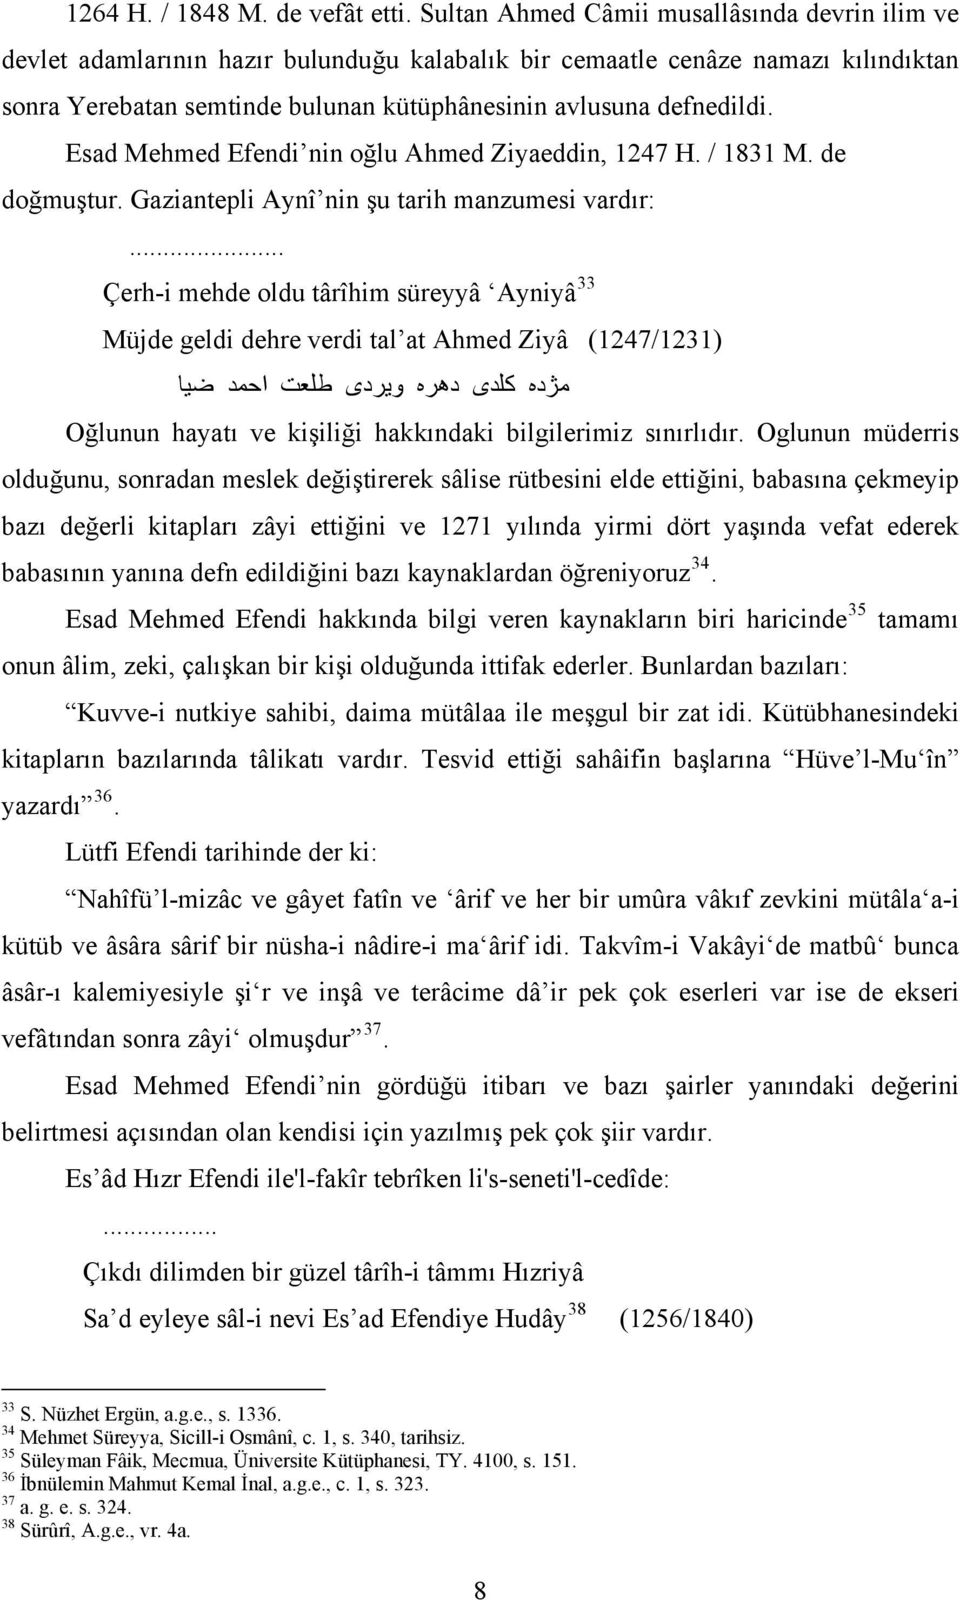 Esad Mehmed Efendi nin oğlu Ahmed Ziyaeddin, 1247 H. / 1831 M. de doğmuştur. Gaziantepli Aynî nin şu tarih manzumesi vardır:.